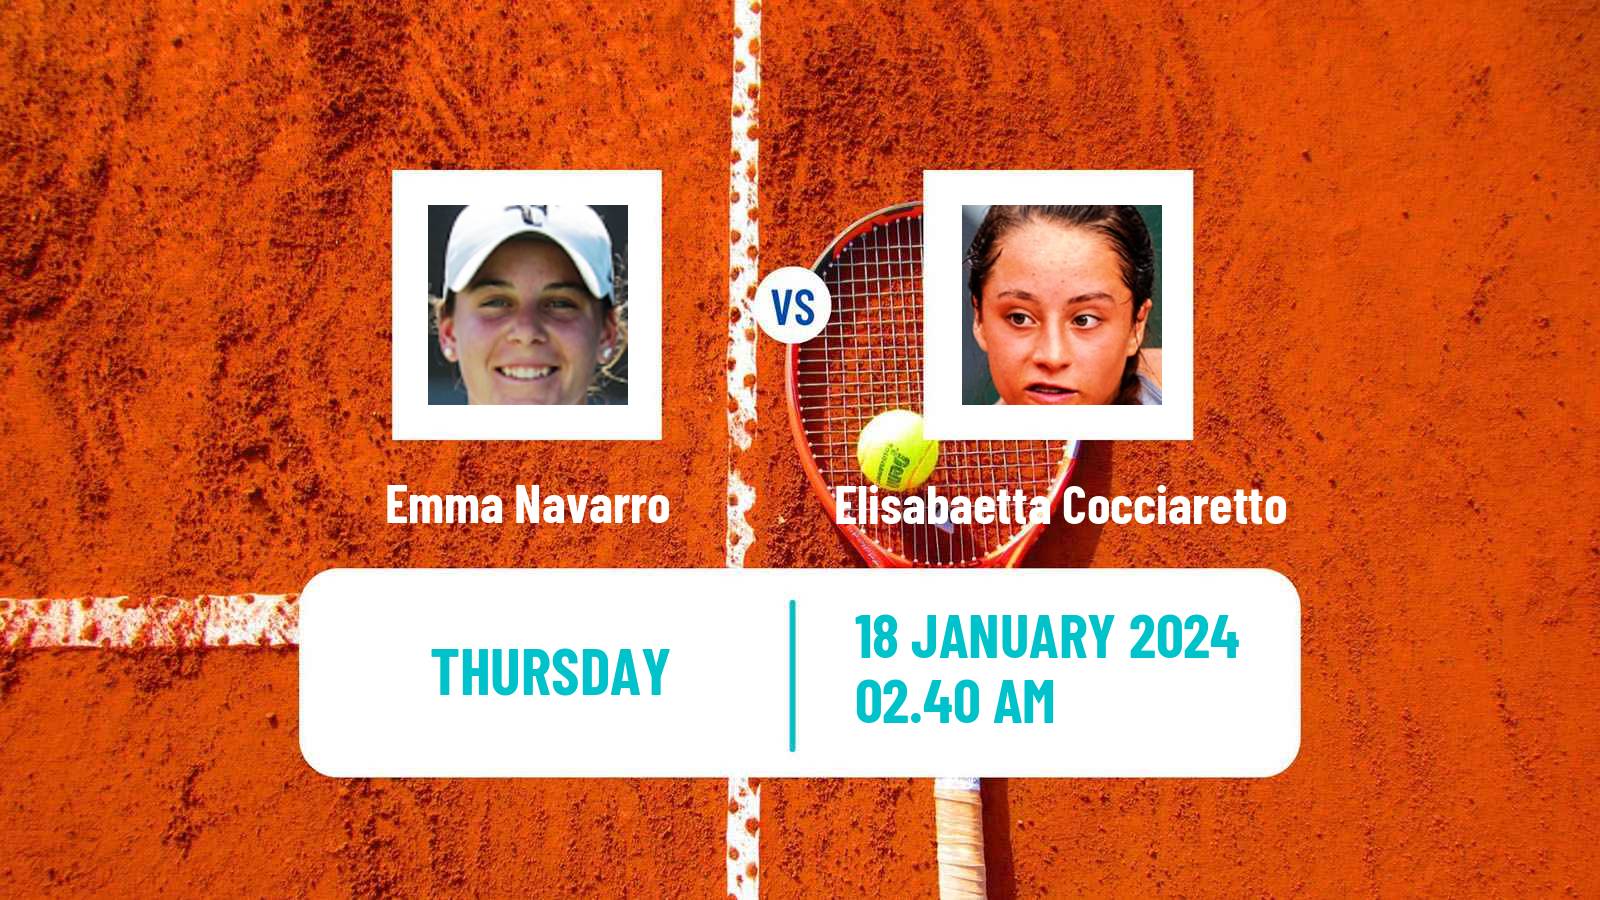 Tennis WTA Australian Open Emma Navarro - Elisabaetta Cocciaretto